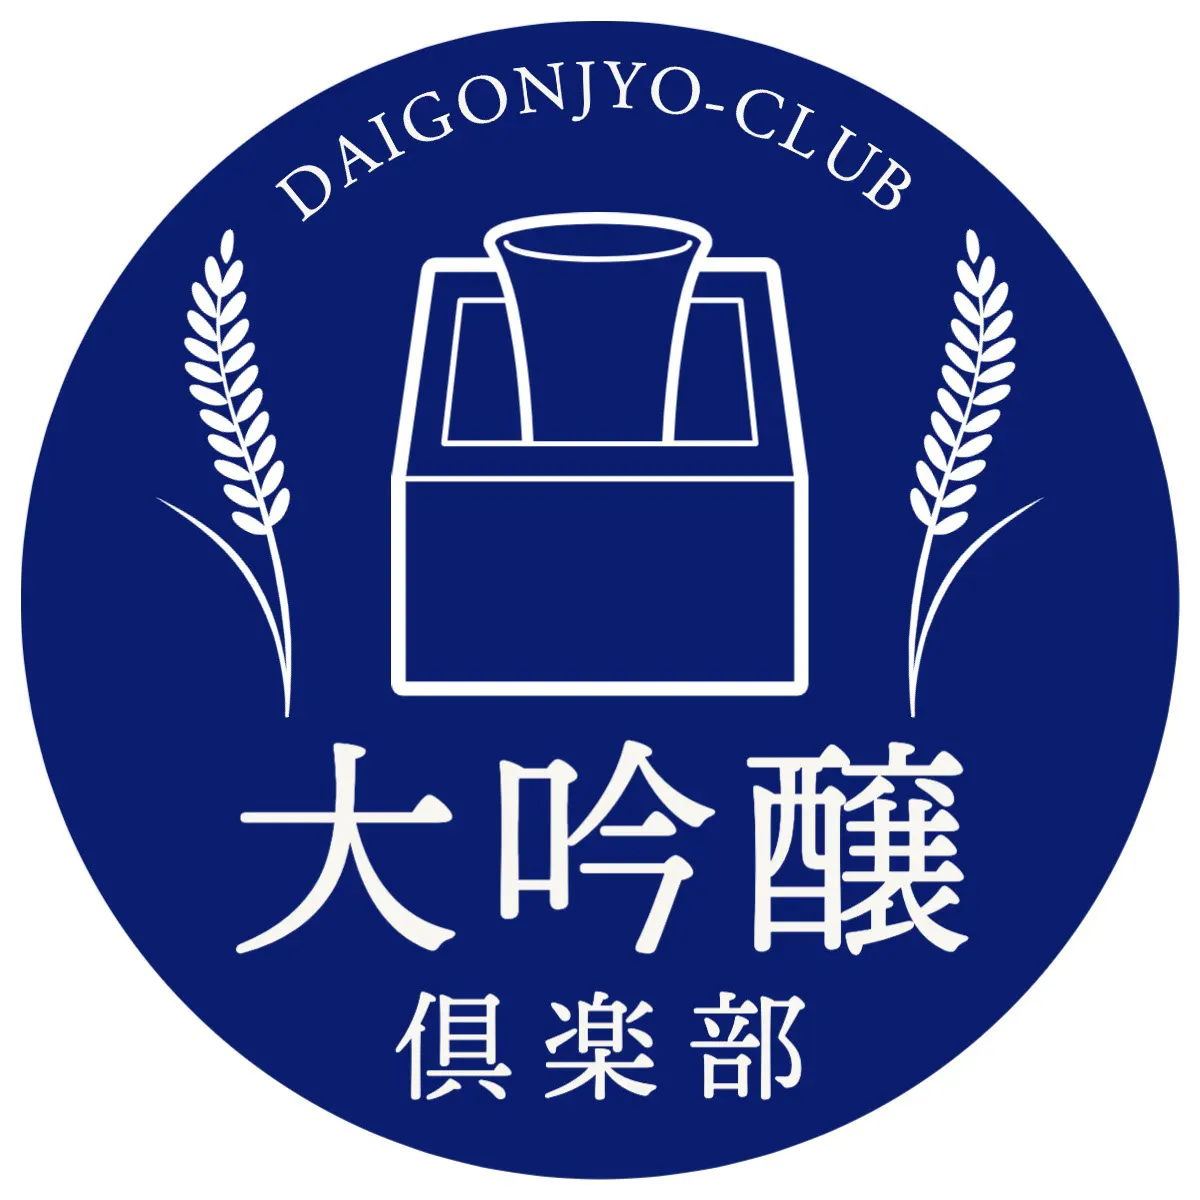 japanese sake club sticker logo